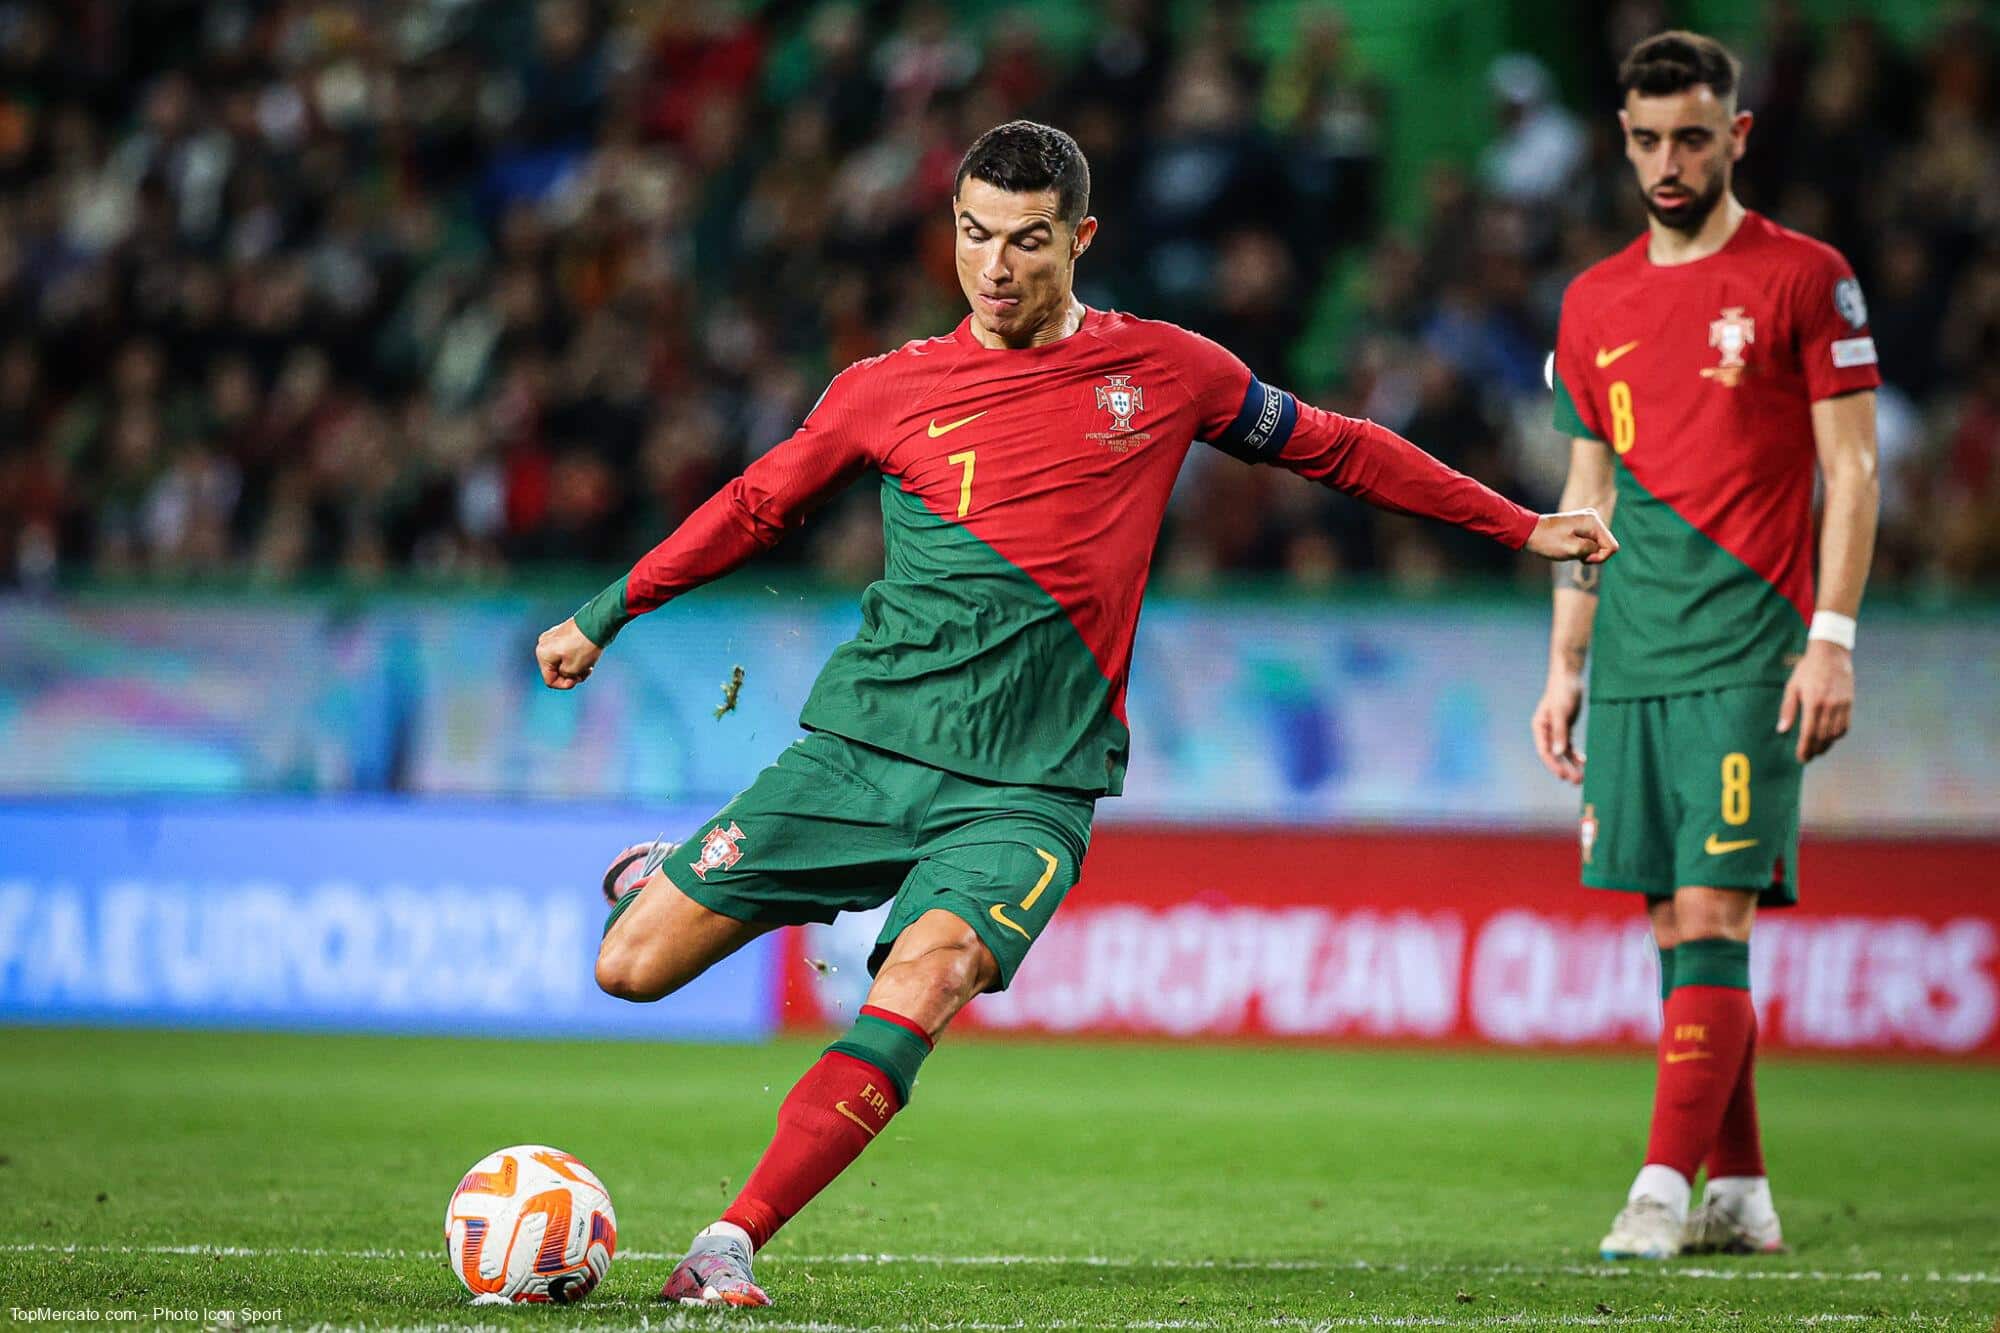 Mercato Ronaldo voulait rejoindre Arsenal, affirme un journaliste